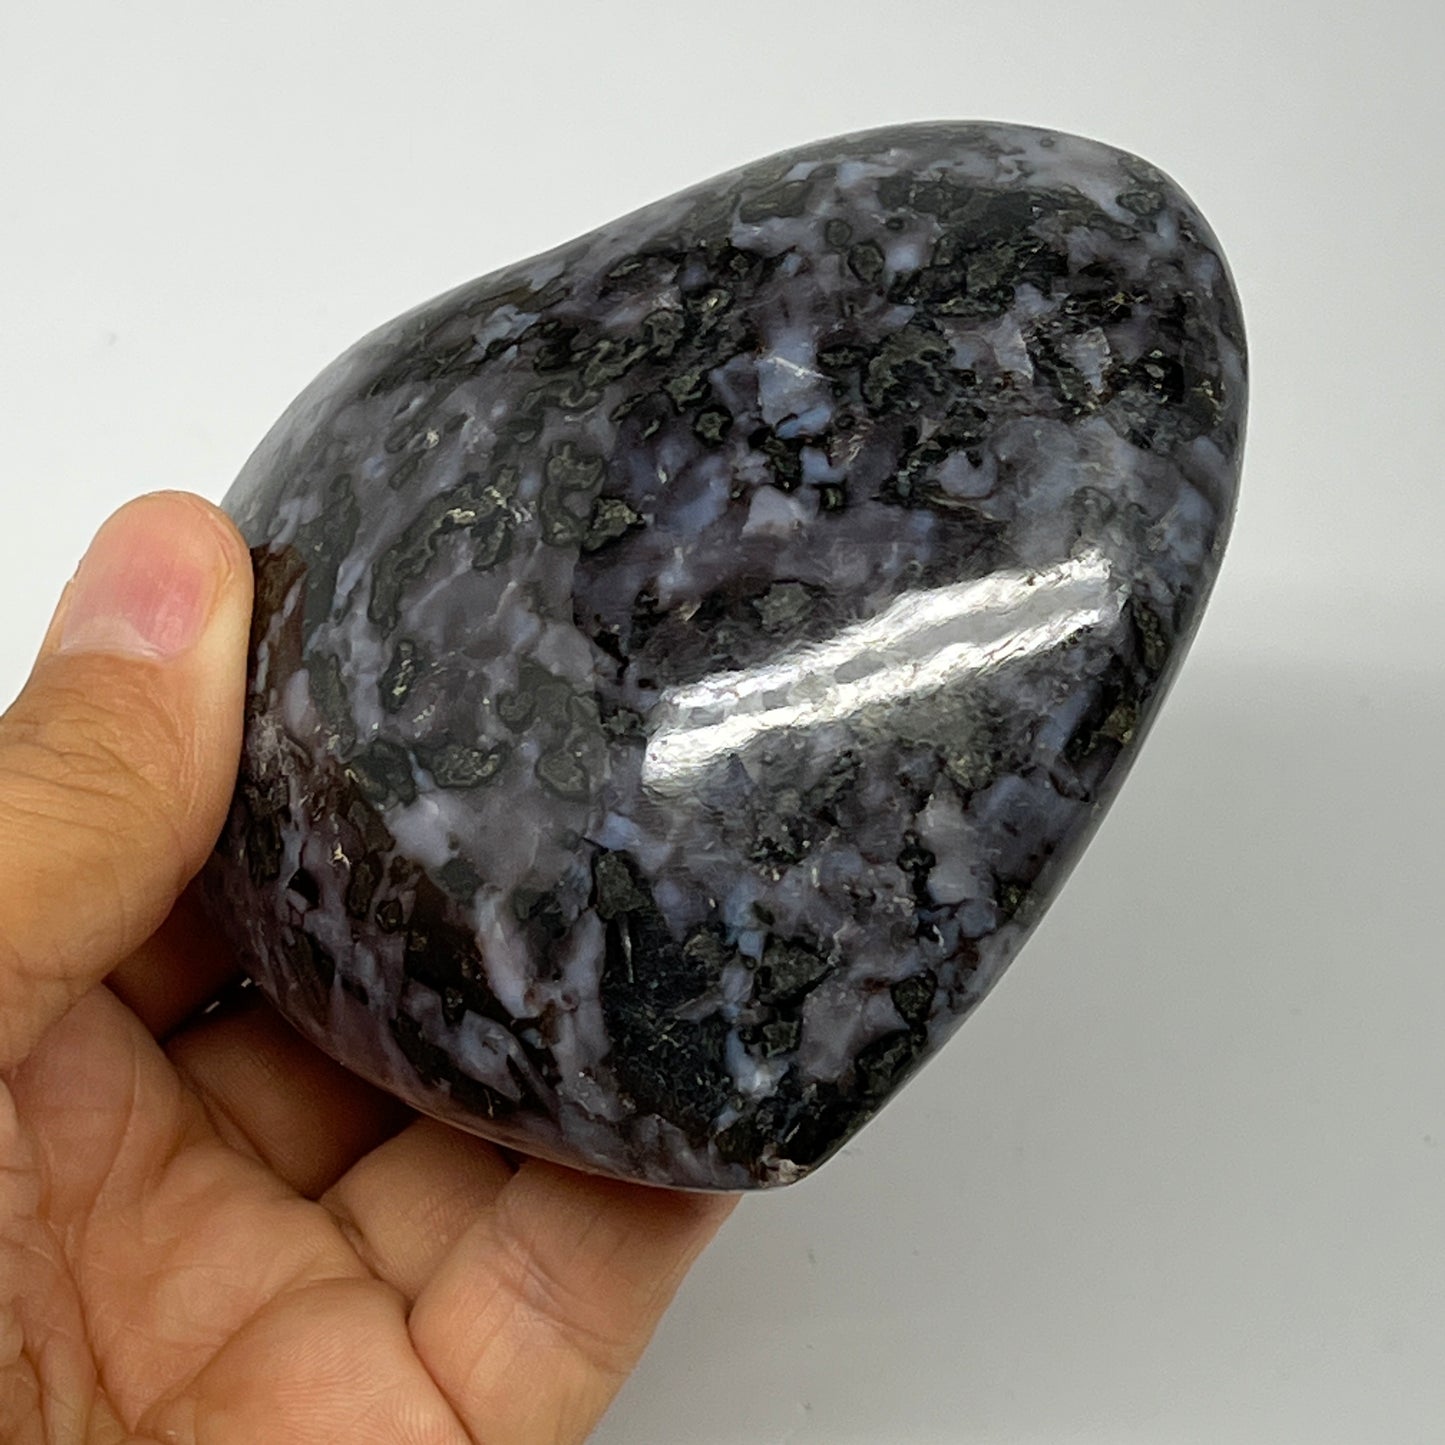 430.4g,3.3"x3.7"x1.5" Indigo Gabro Merlinite Heart Gemstone @Madagascar,B19895